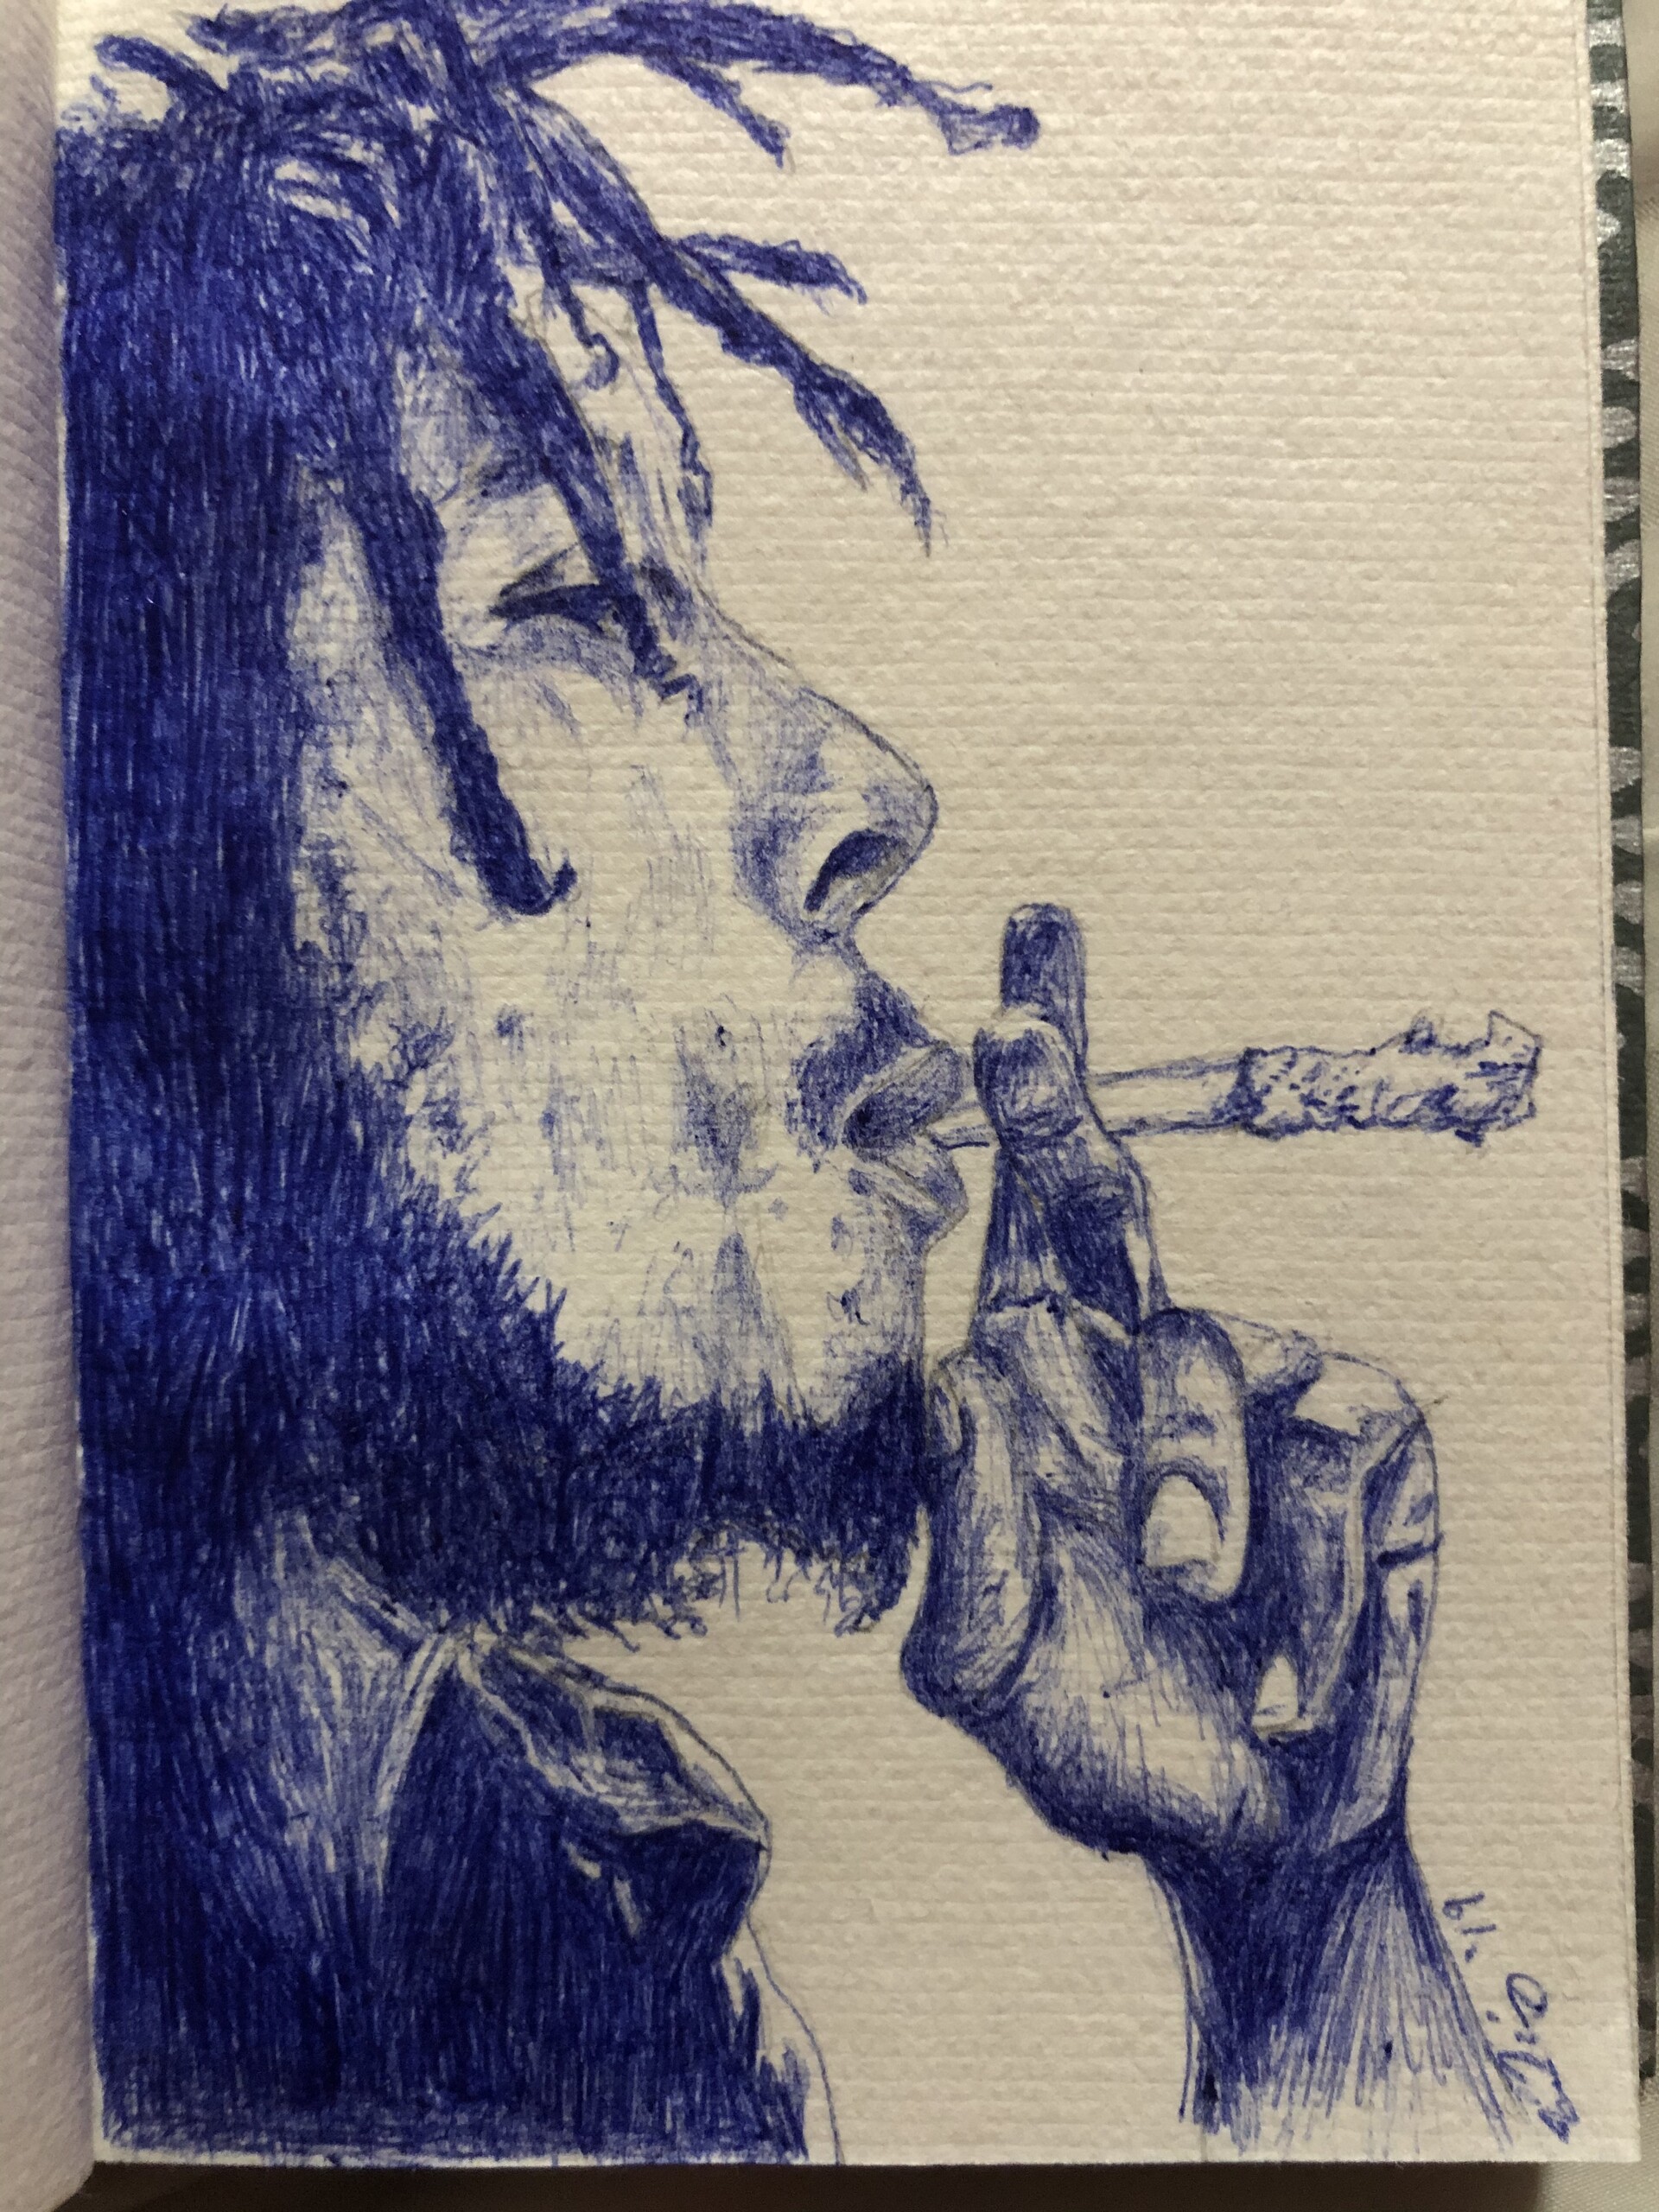 Bob Marley Pencil Art Drawing by Dilan Sugathapala  Saatchi Art